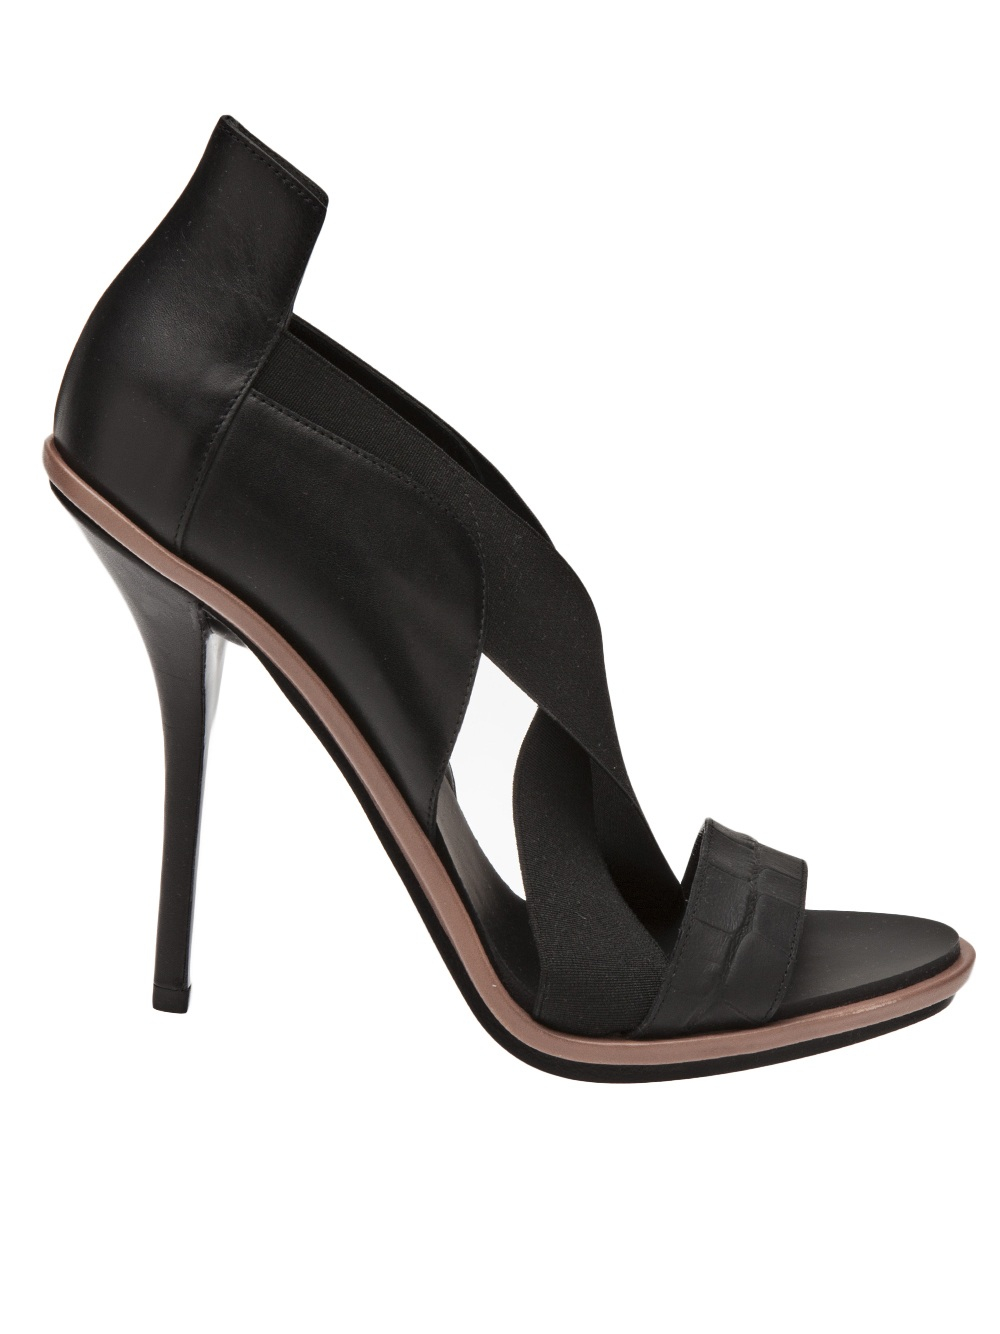 Lyst - Balenciaga Strappy Sandal in Black